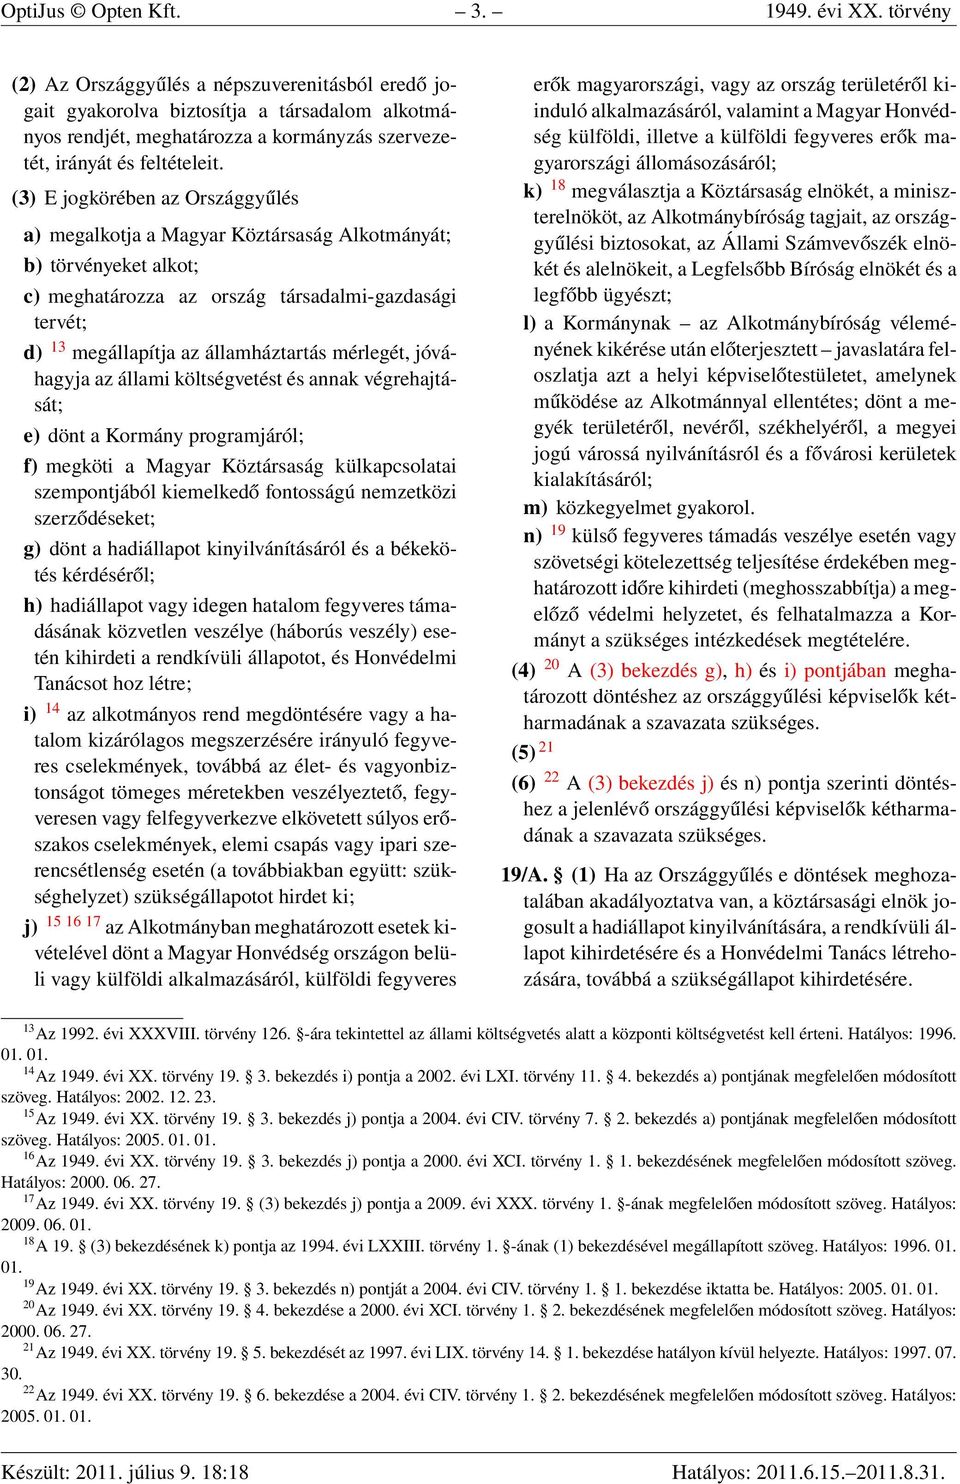 (3) E jogkörében az Országgyűlés a) megalkotja a Magyar Köztársaság Alkotmányát; b) törvényeket alkot; c) meghatározza az ország társadalmi-gazdasági tervét; d) 13 megállapítja az államháztartás